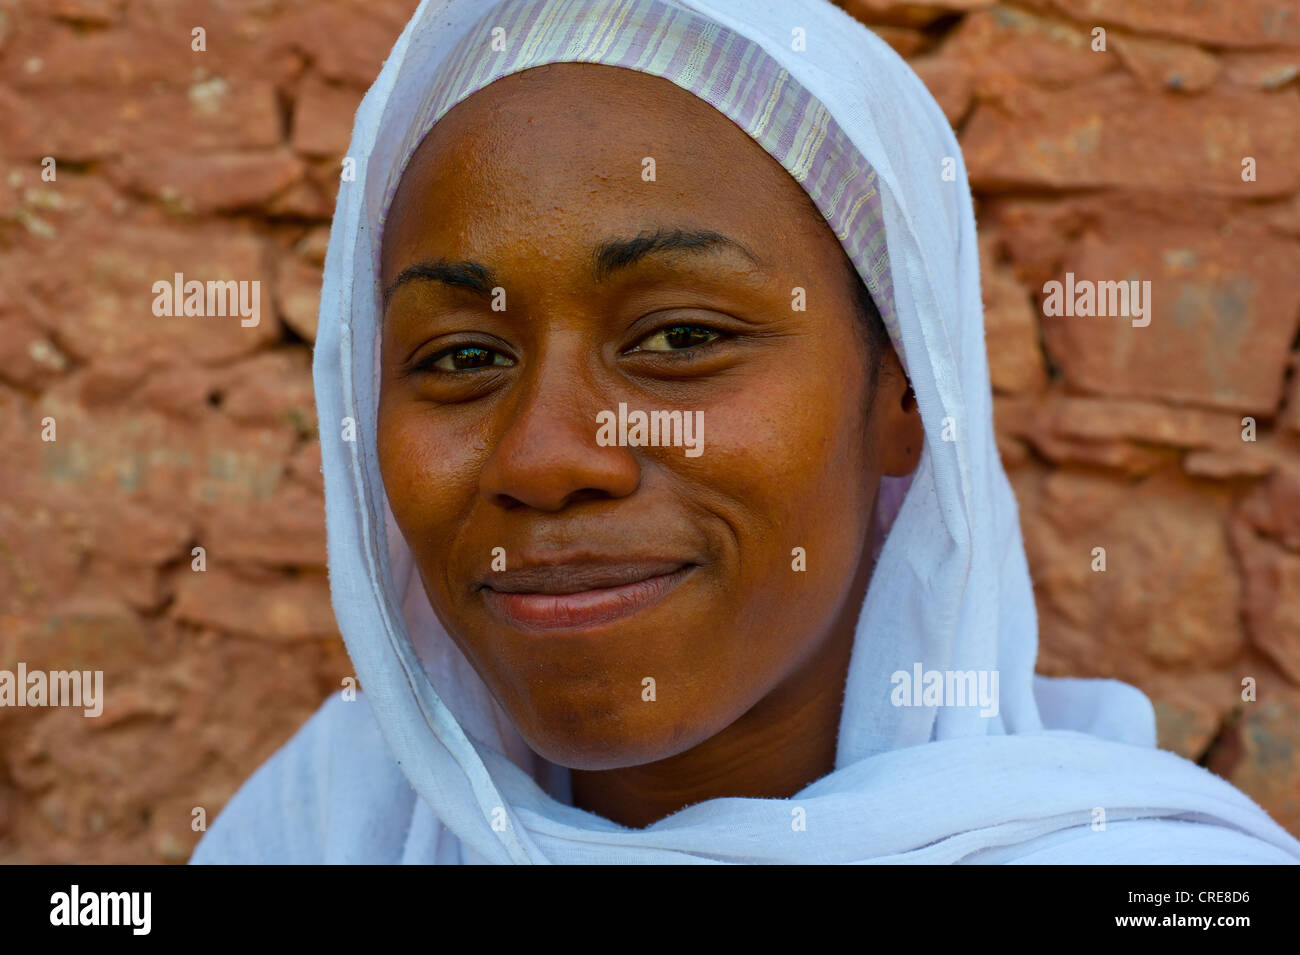 Ritratto di un sorridente, di carnagione scura, giovane donna che indossa un velo bianco, nel sud del Marocco, Marocco, Africa Foto Stock